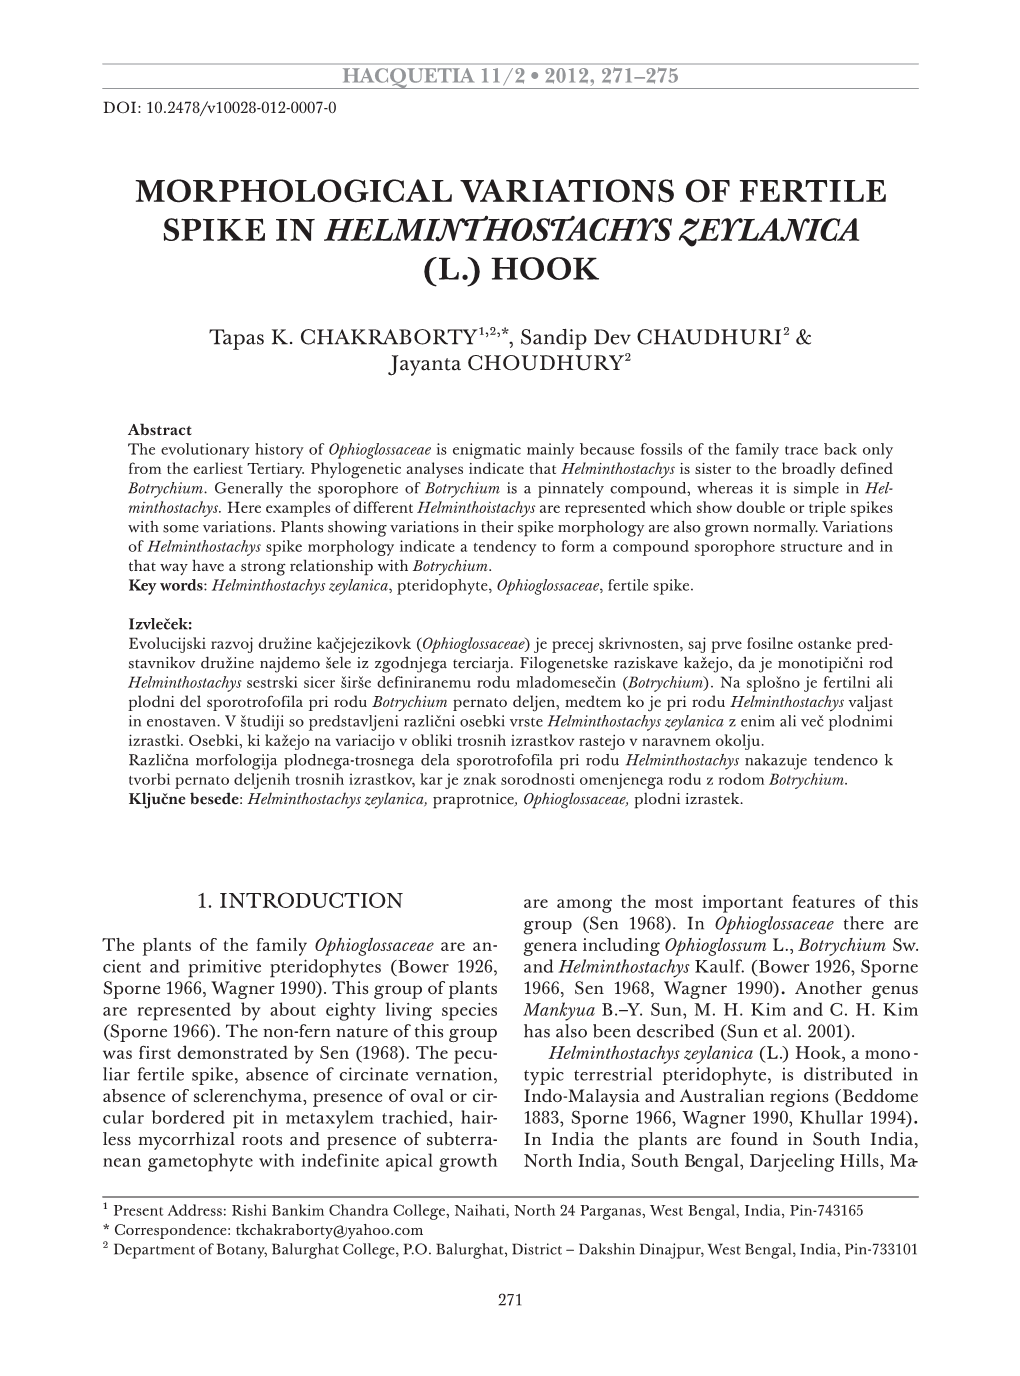 Morphological Variations of Fertile Spike in Helminthostachys Zeylanica (L.) Hook